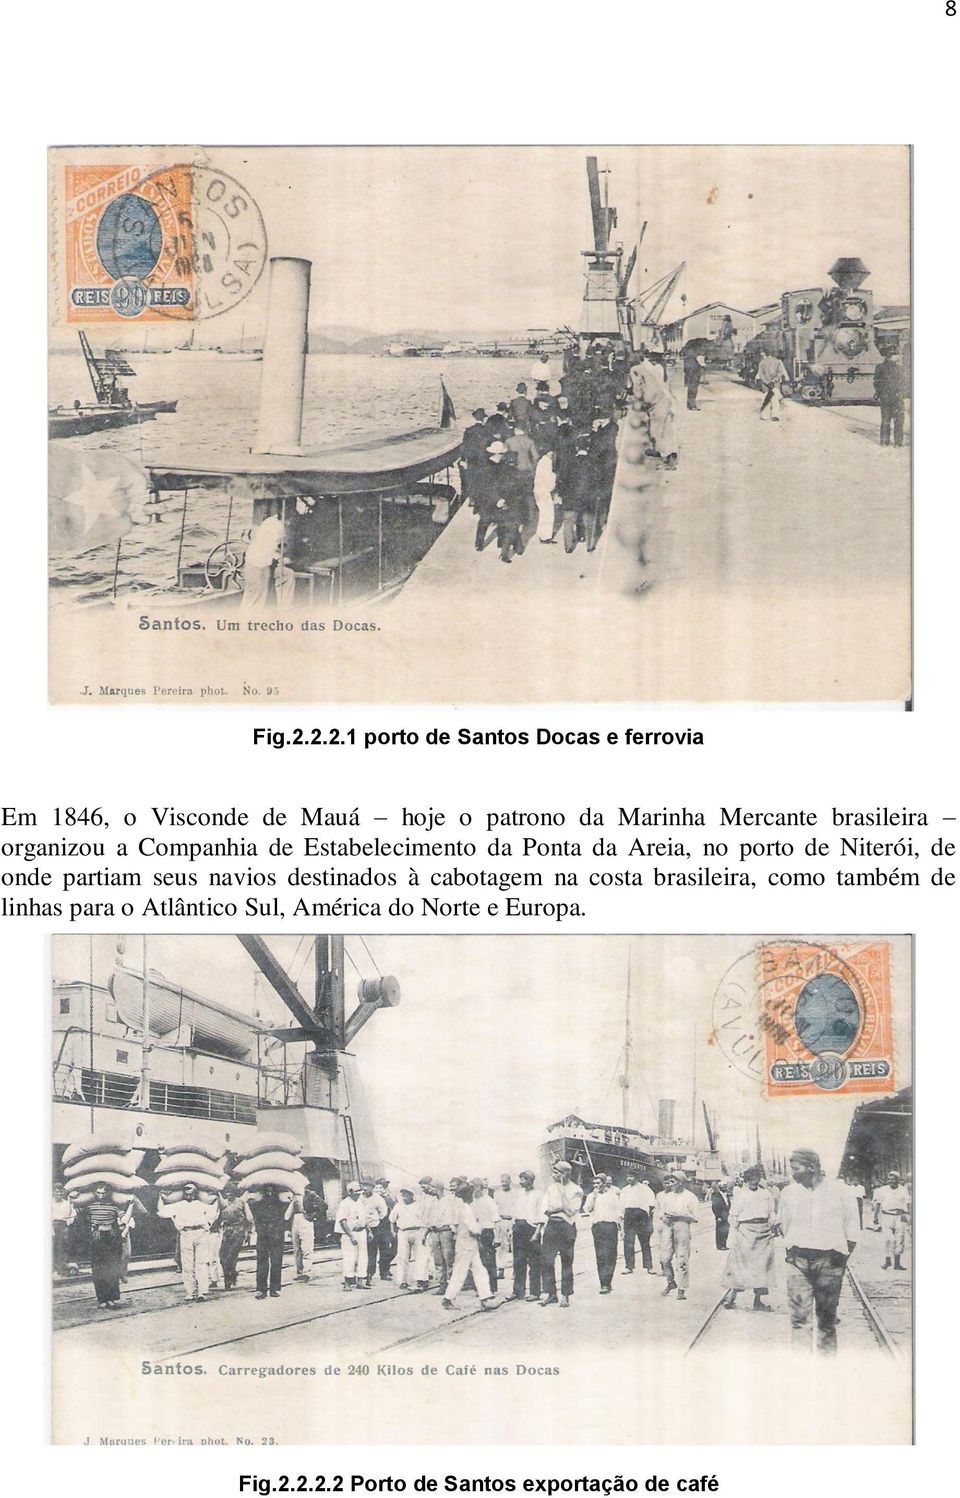 Mercante brasileira organizou a Companhia de Estabelecimento da Ponta da Areia, no porto de